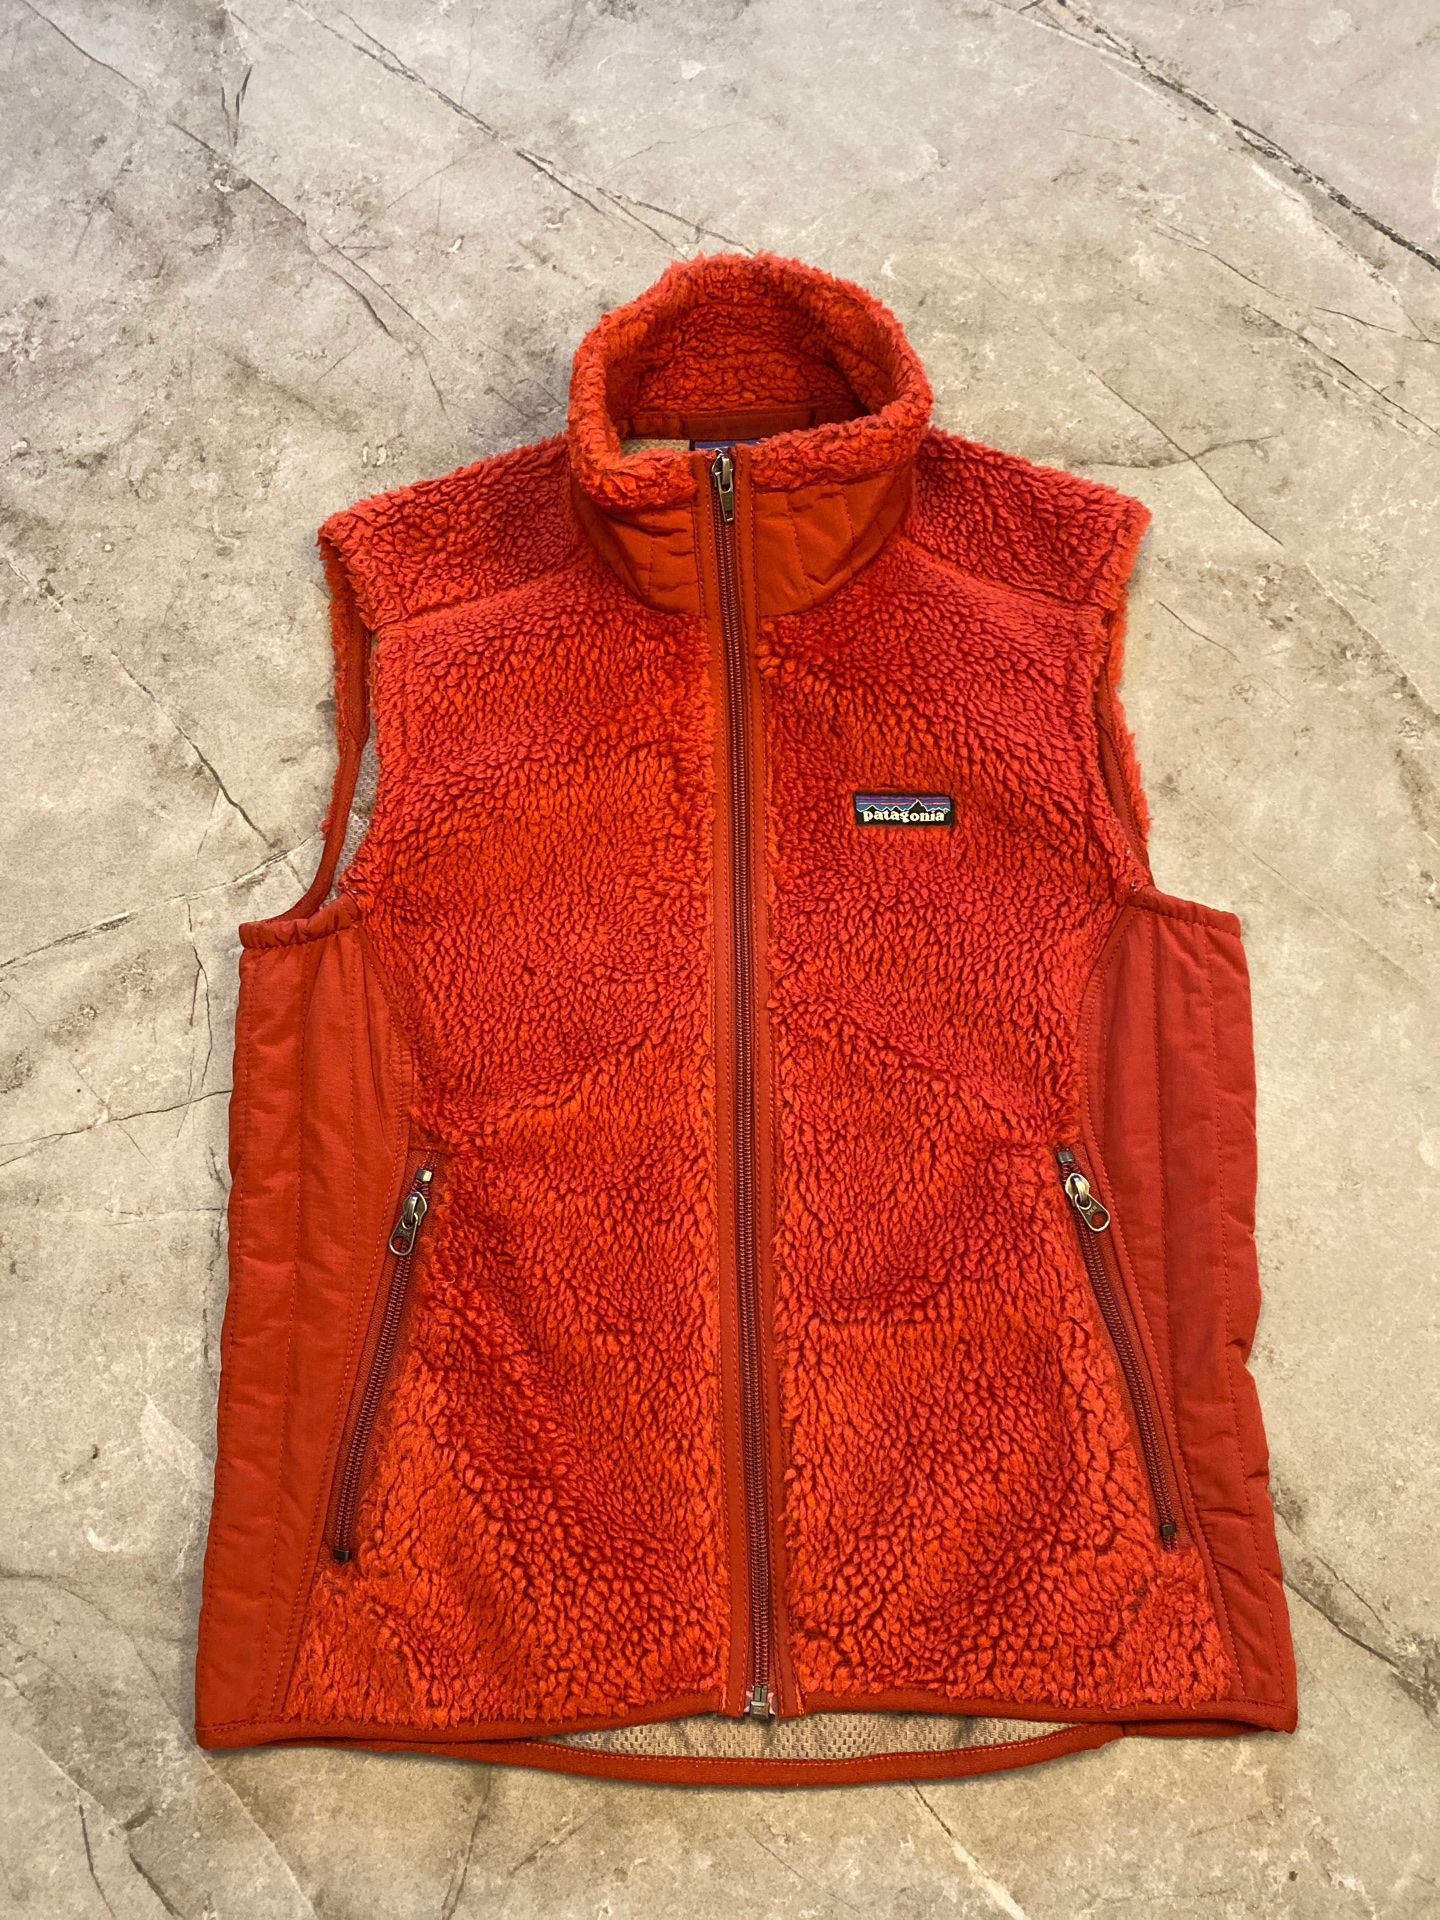 Patagonia women’s vest, size medium